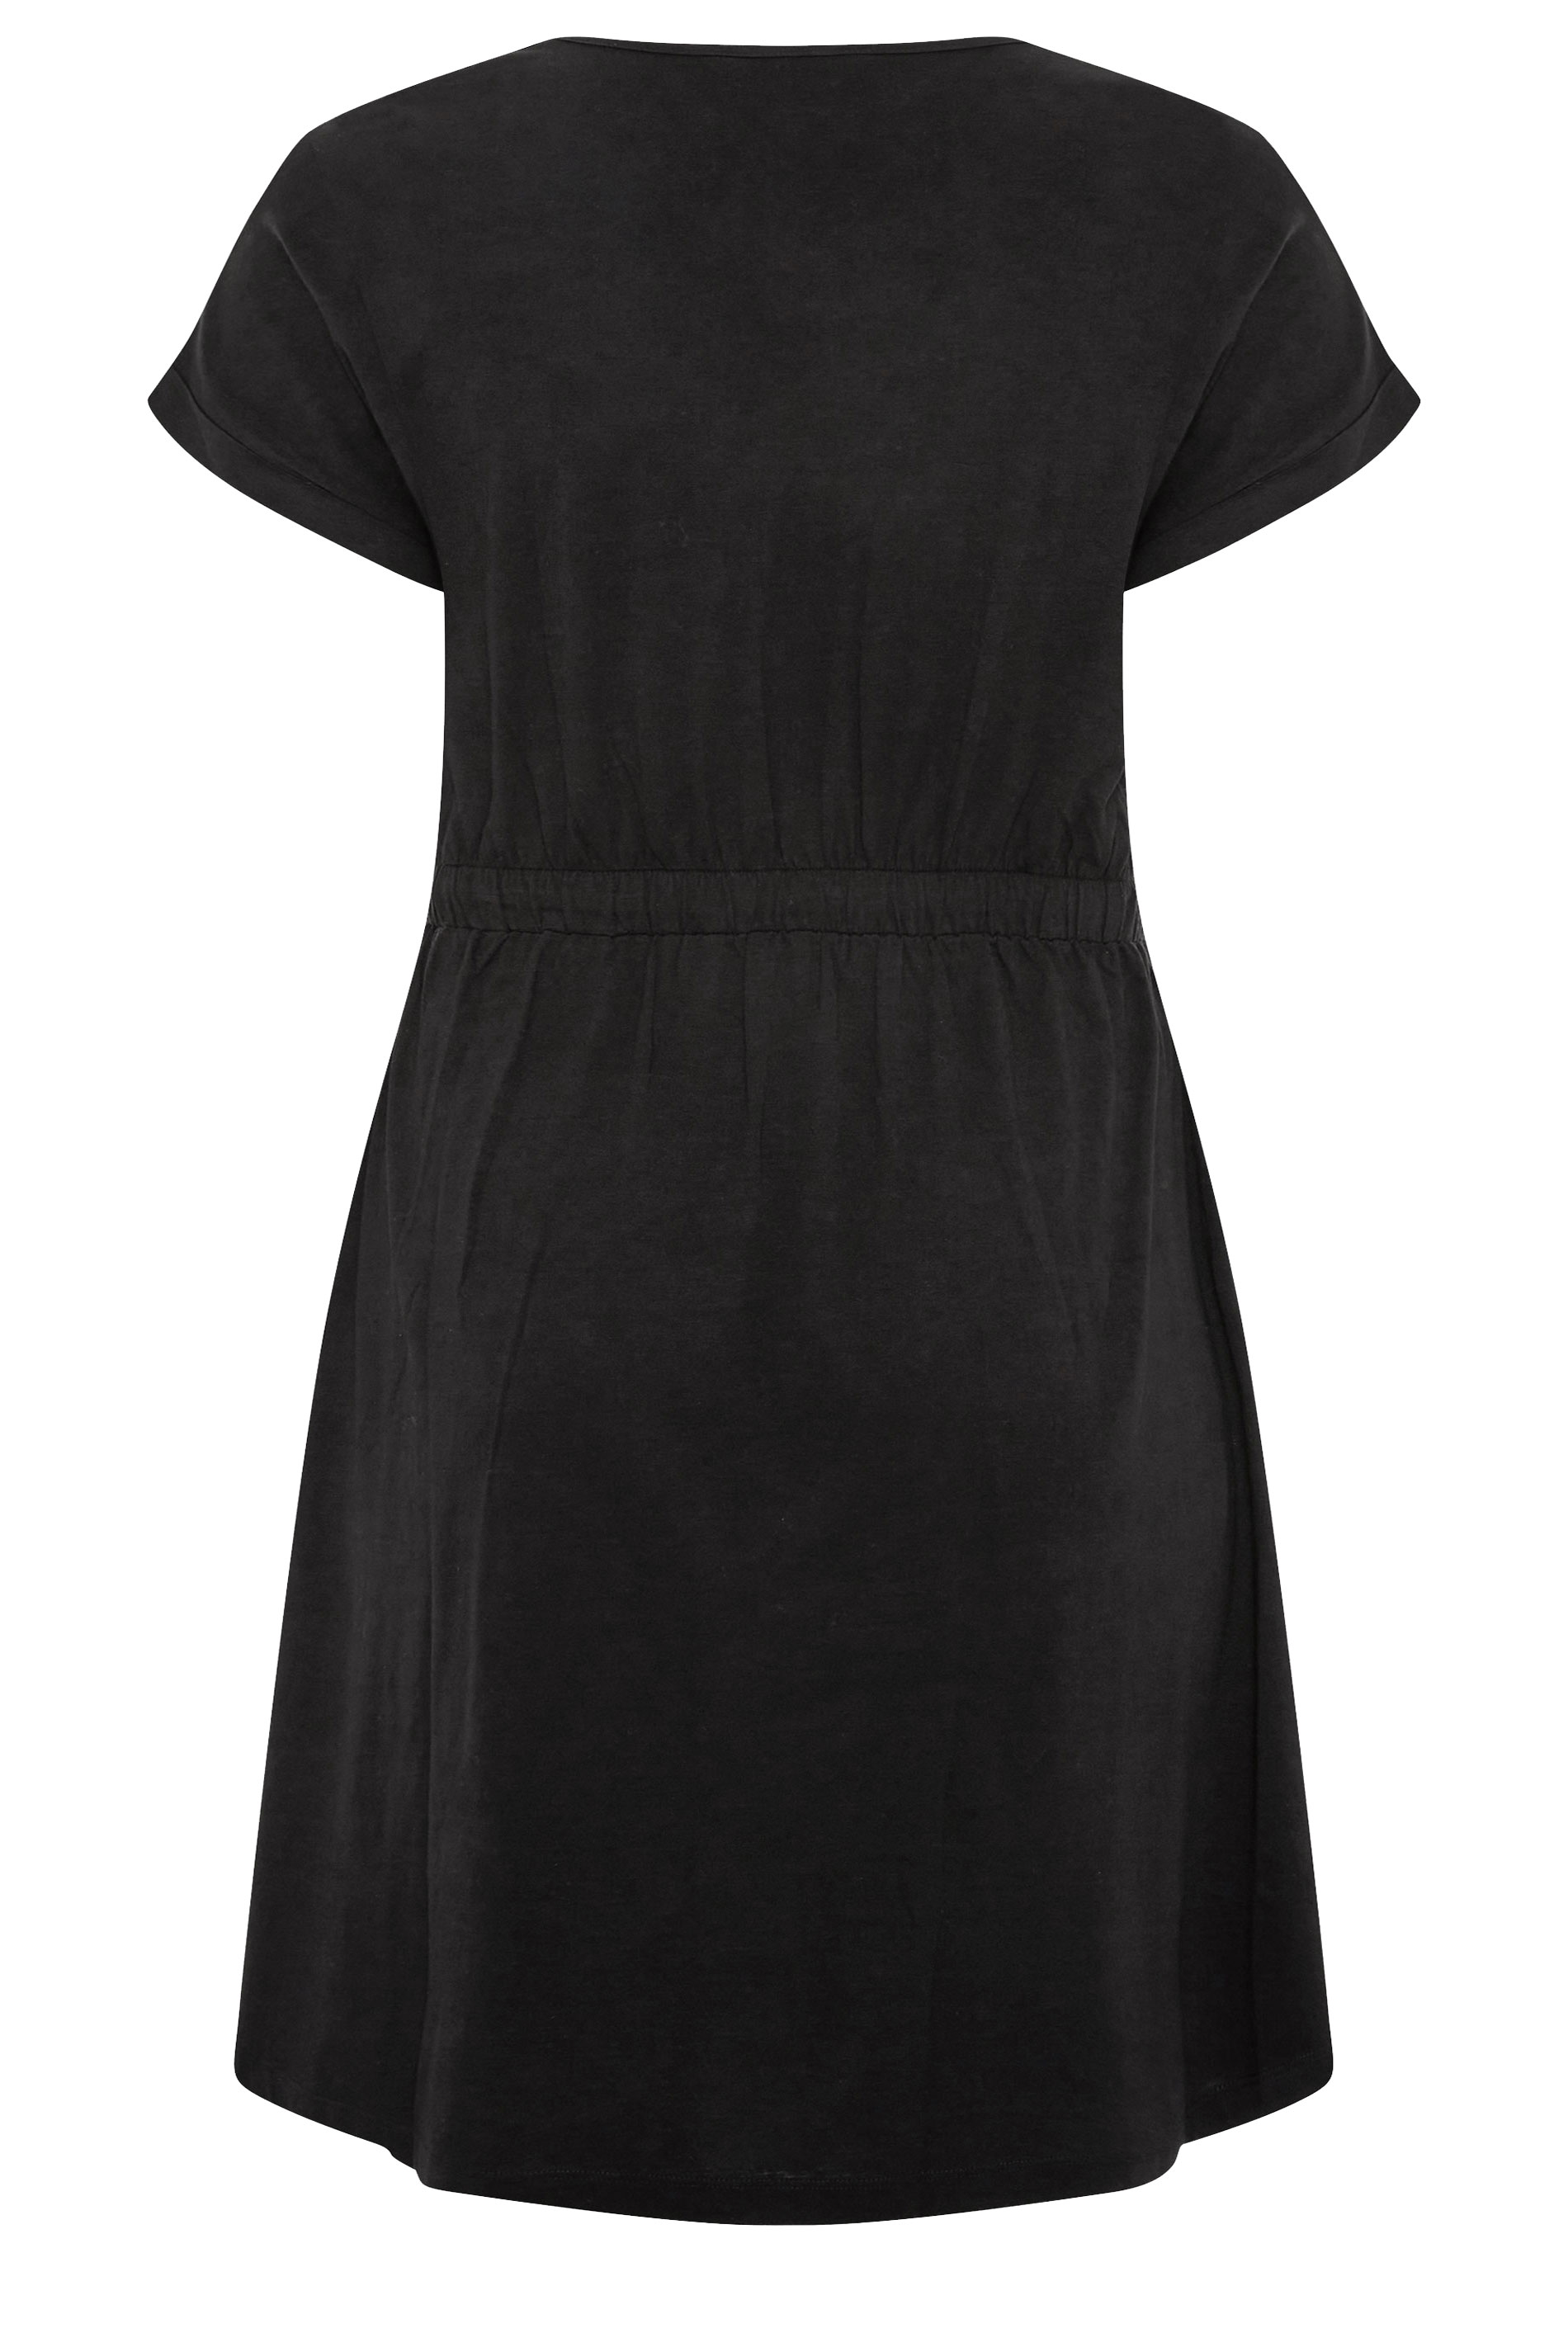 Plus Size Black Cotton T-Shirt Dress | Yours Clothing